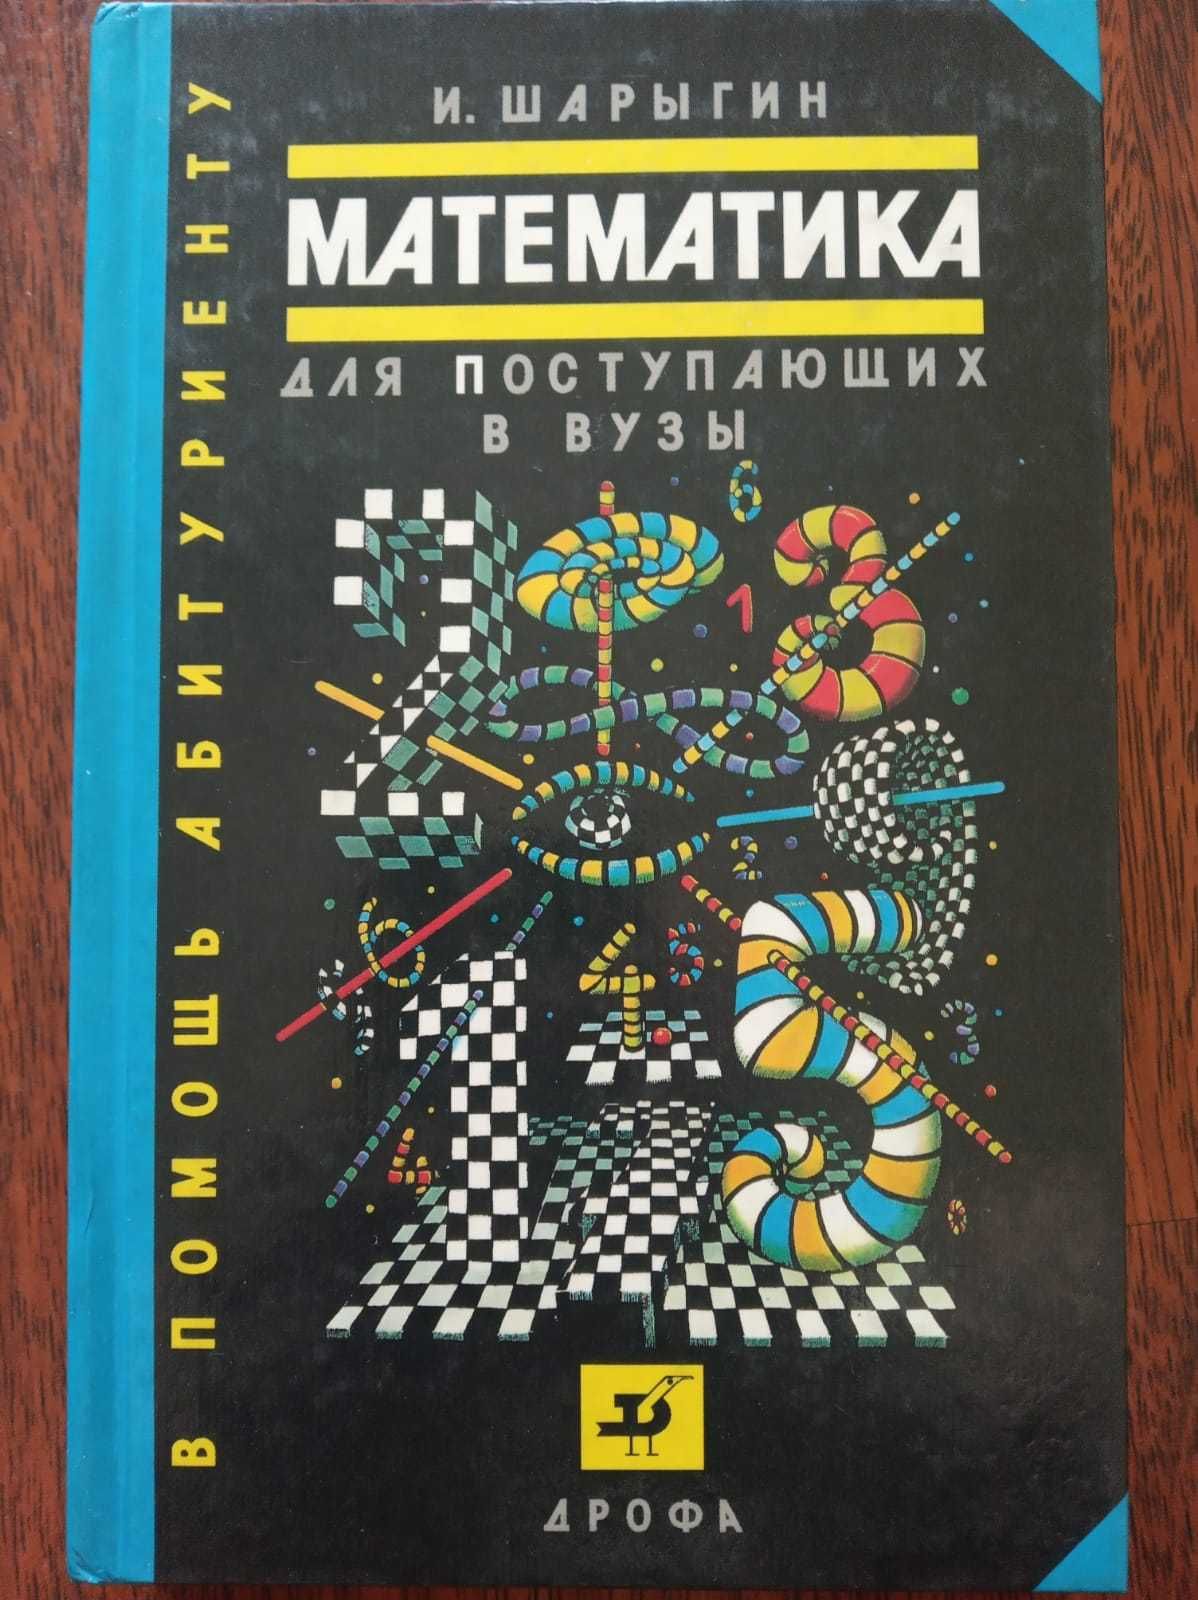 Учебник математики и алгебры